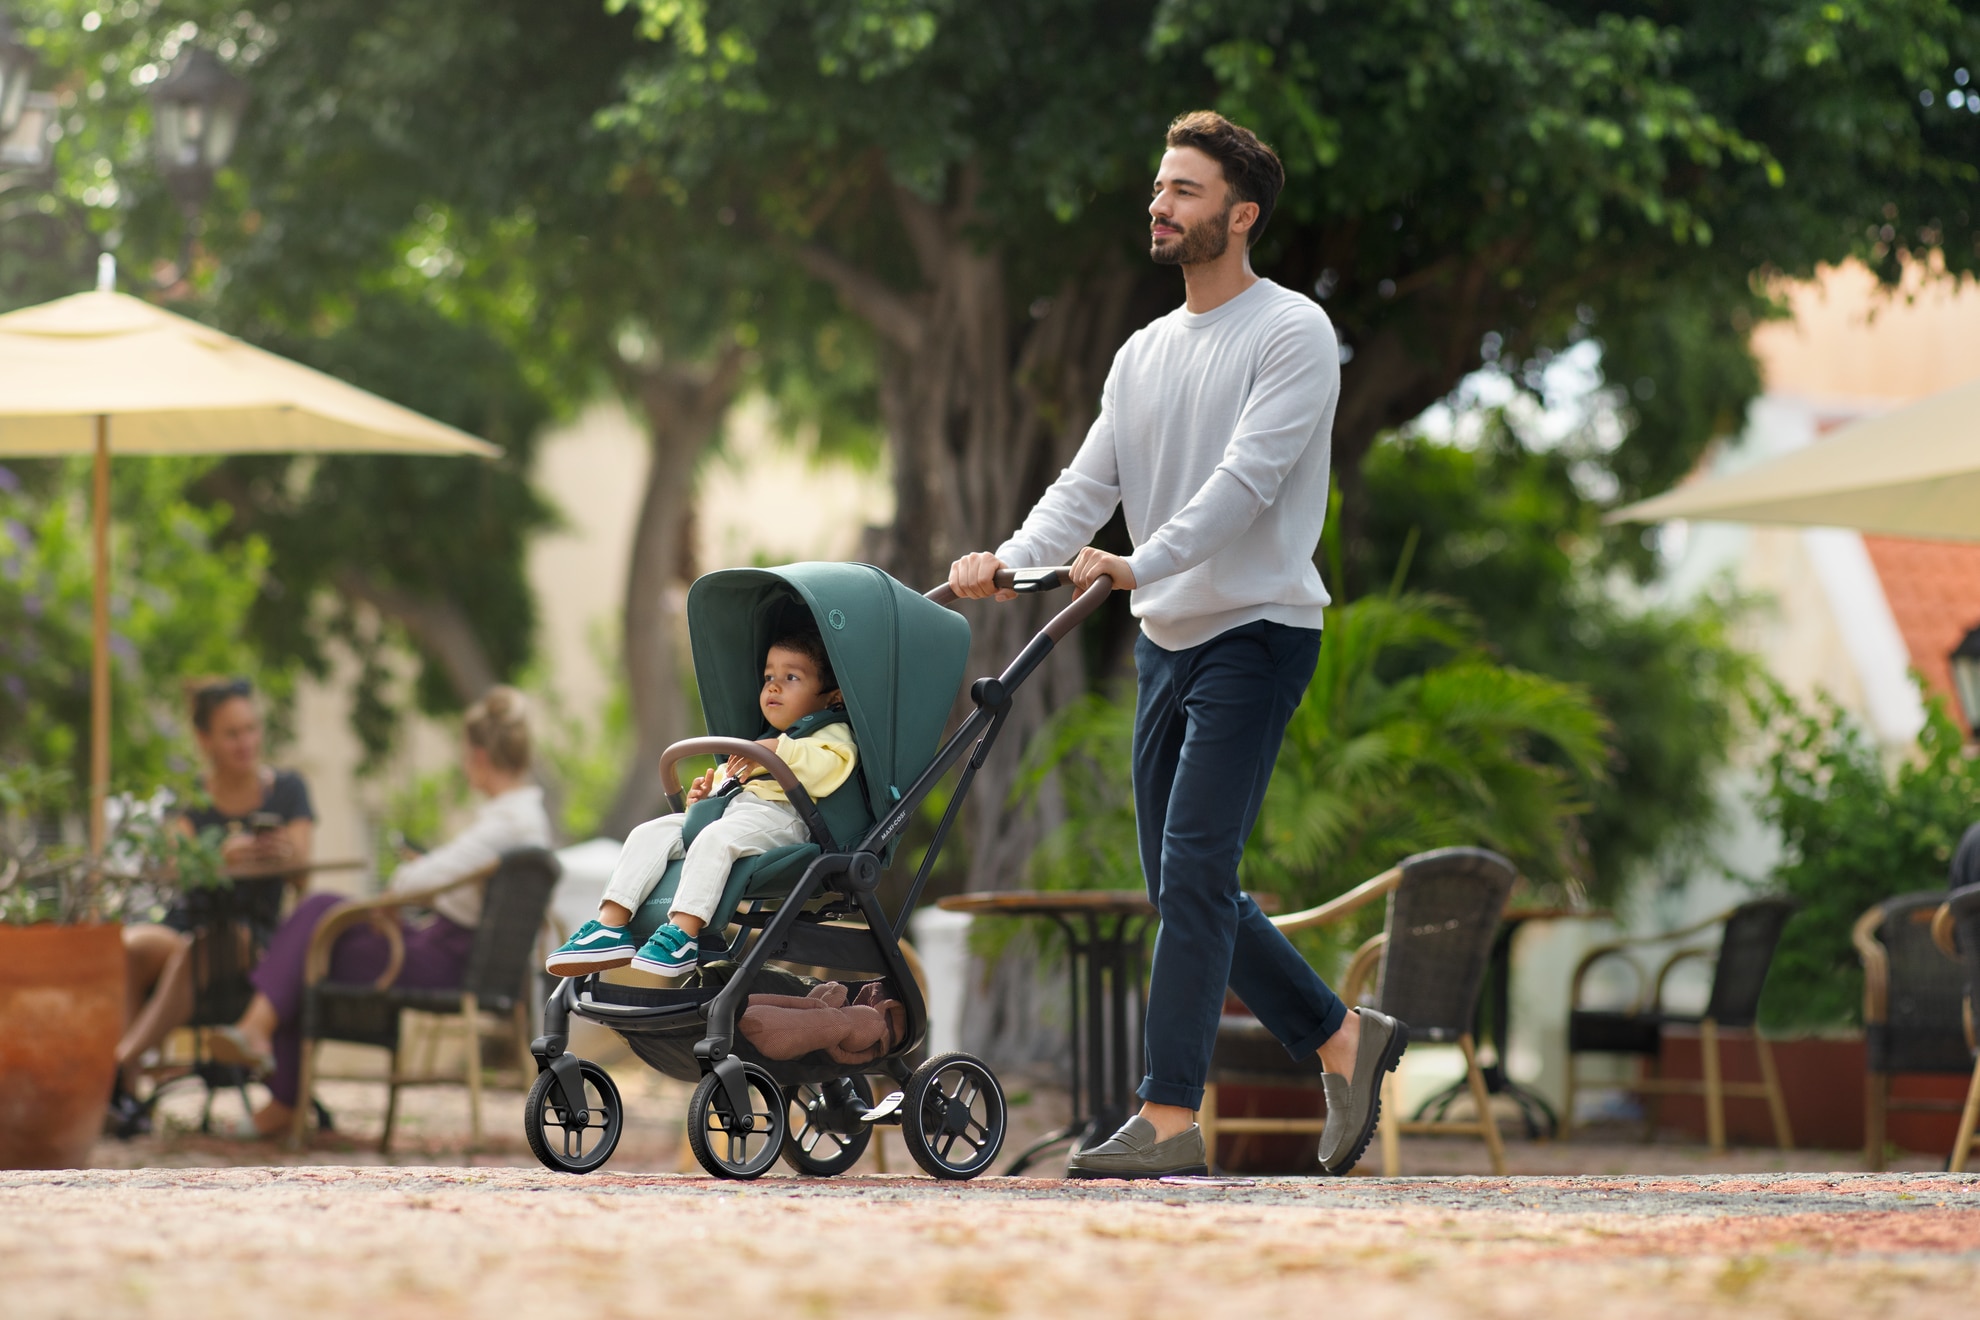 Dom Aggregaat Reisbureau Hoe kies je een kinderwagen die past bij jouw levensstijl als ouder? |  Maxi-Cosi